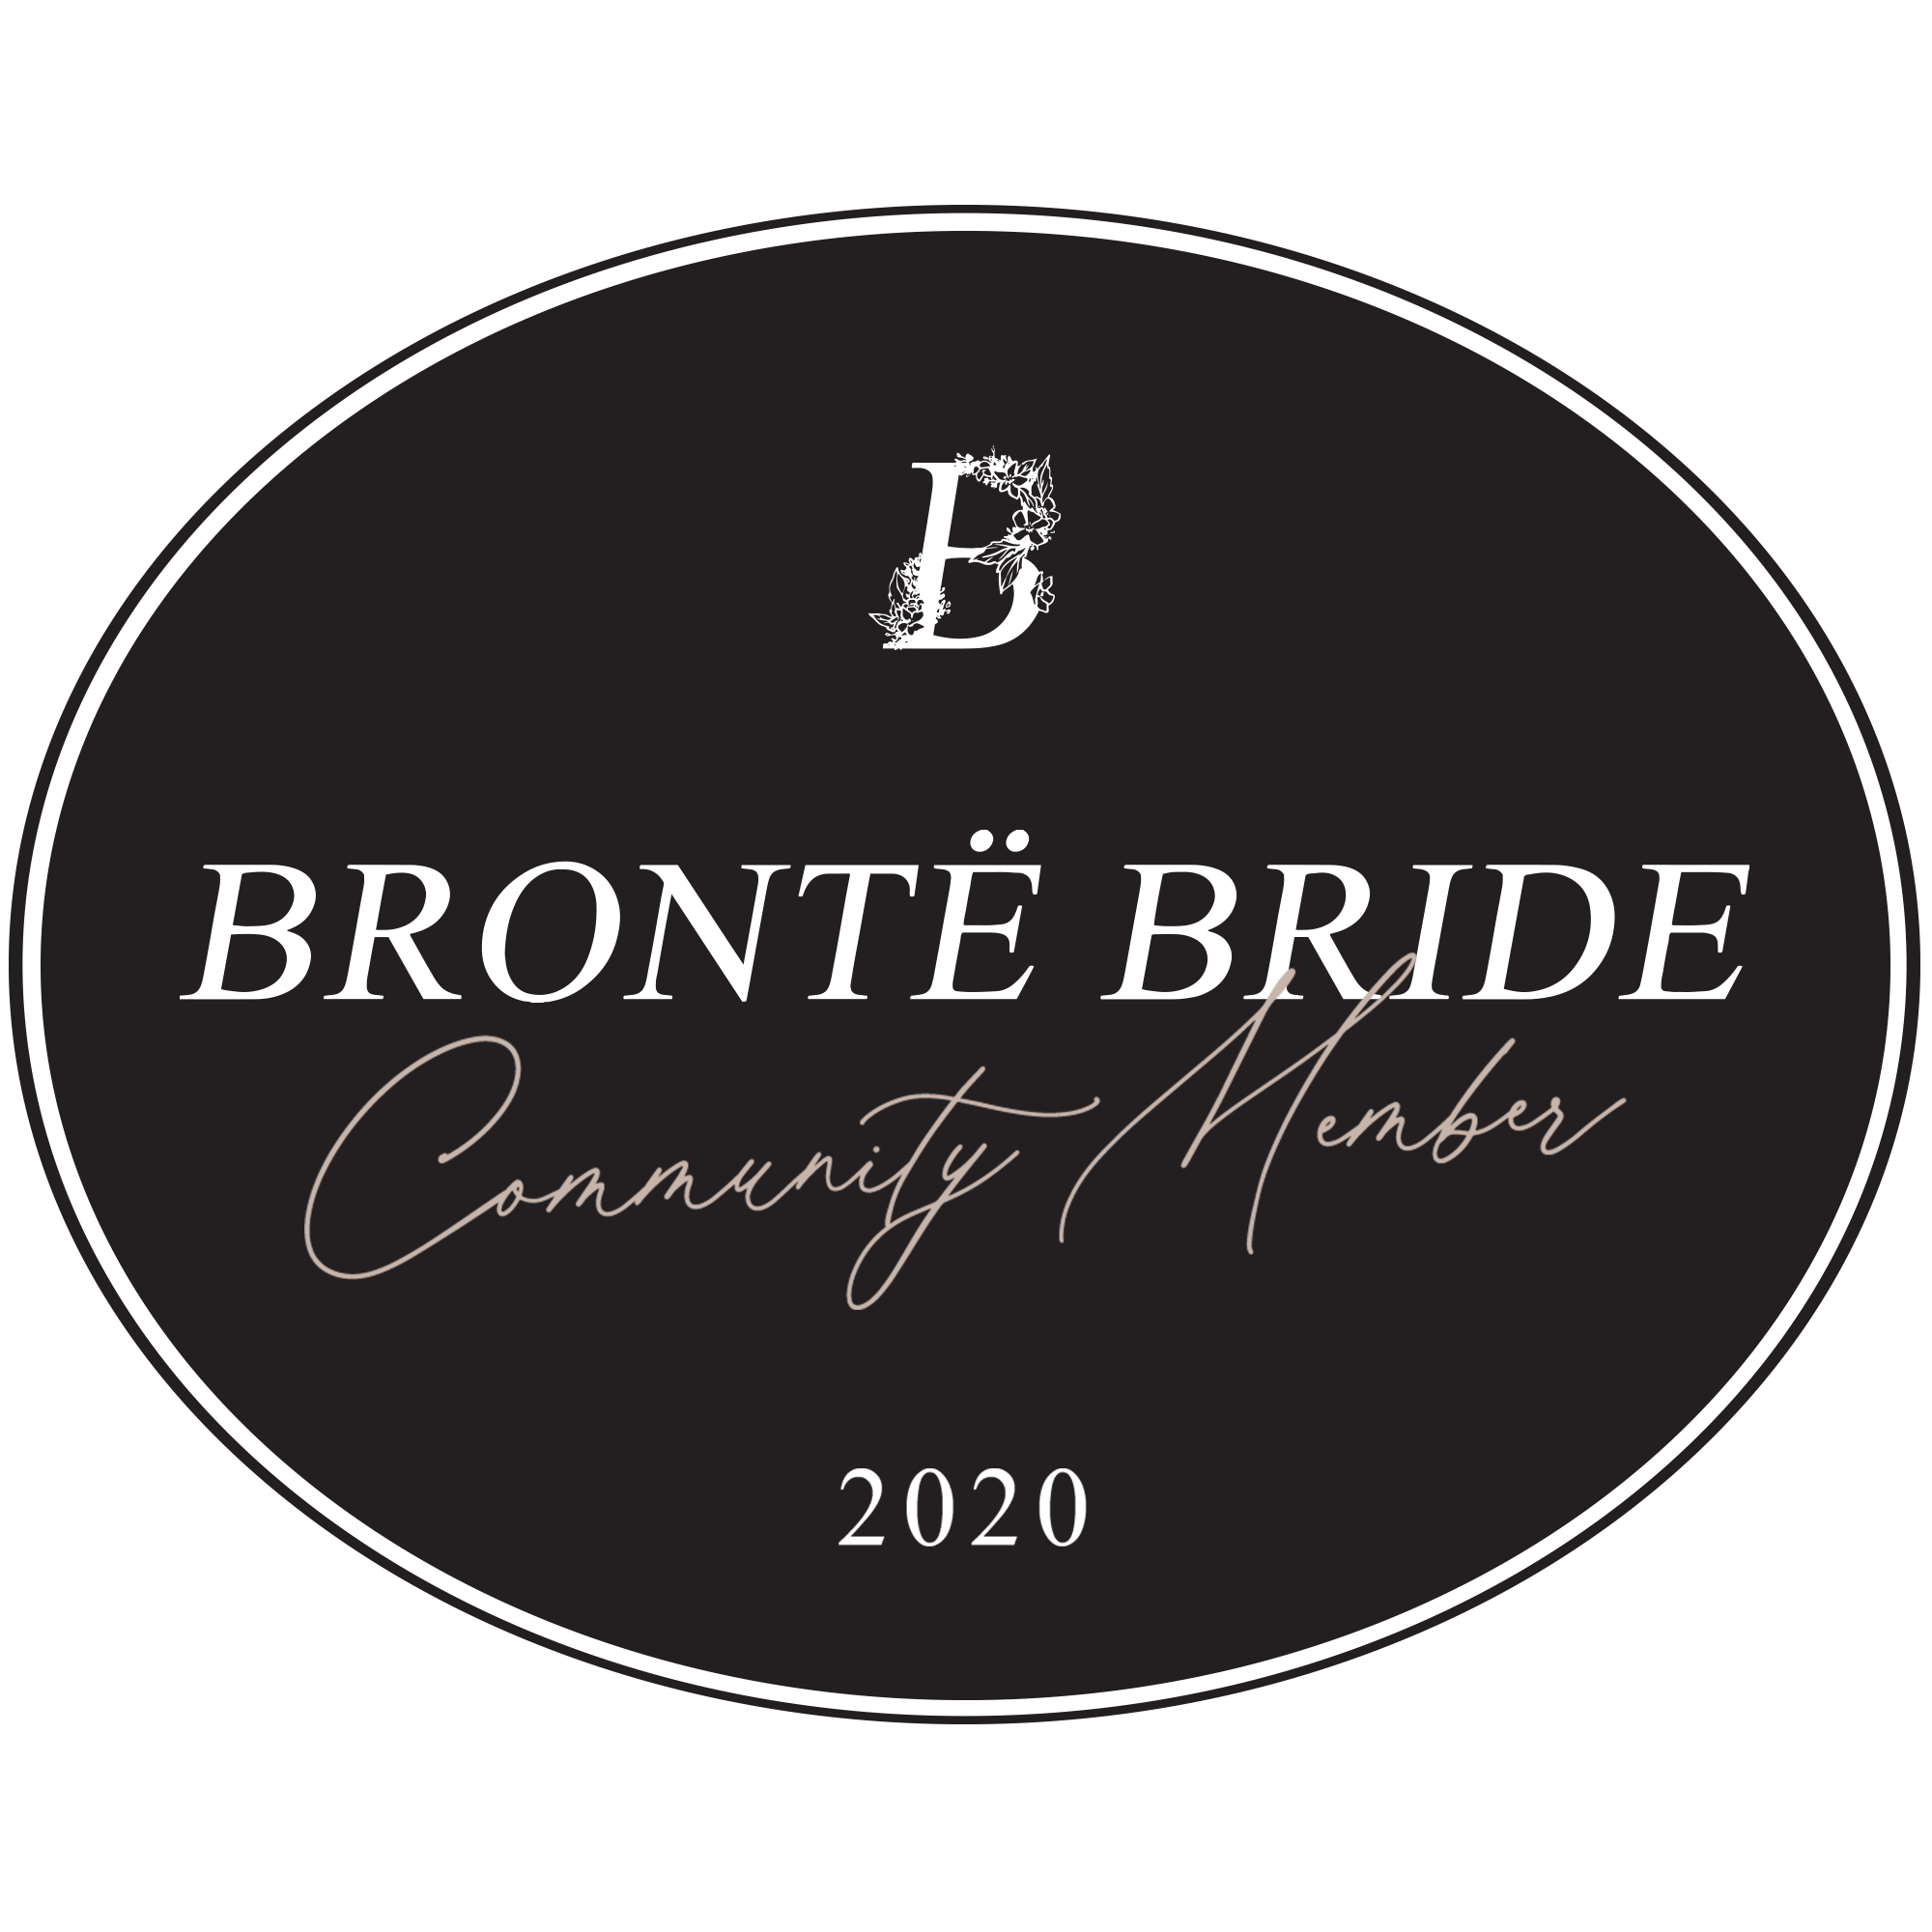 brontebride-communitymemberbadge-2020_55a06e0a-4868-4c17-b73e-7a1659c8c781.png